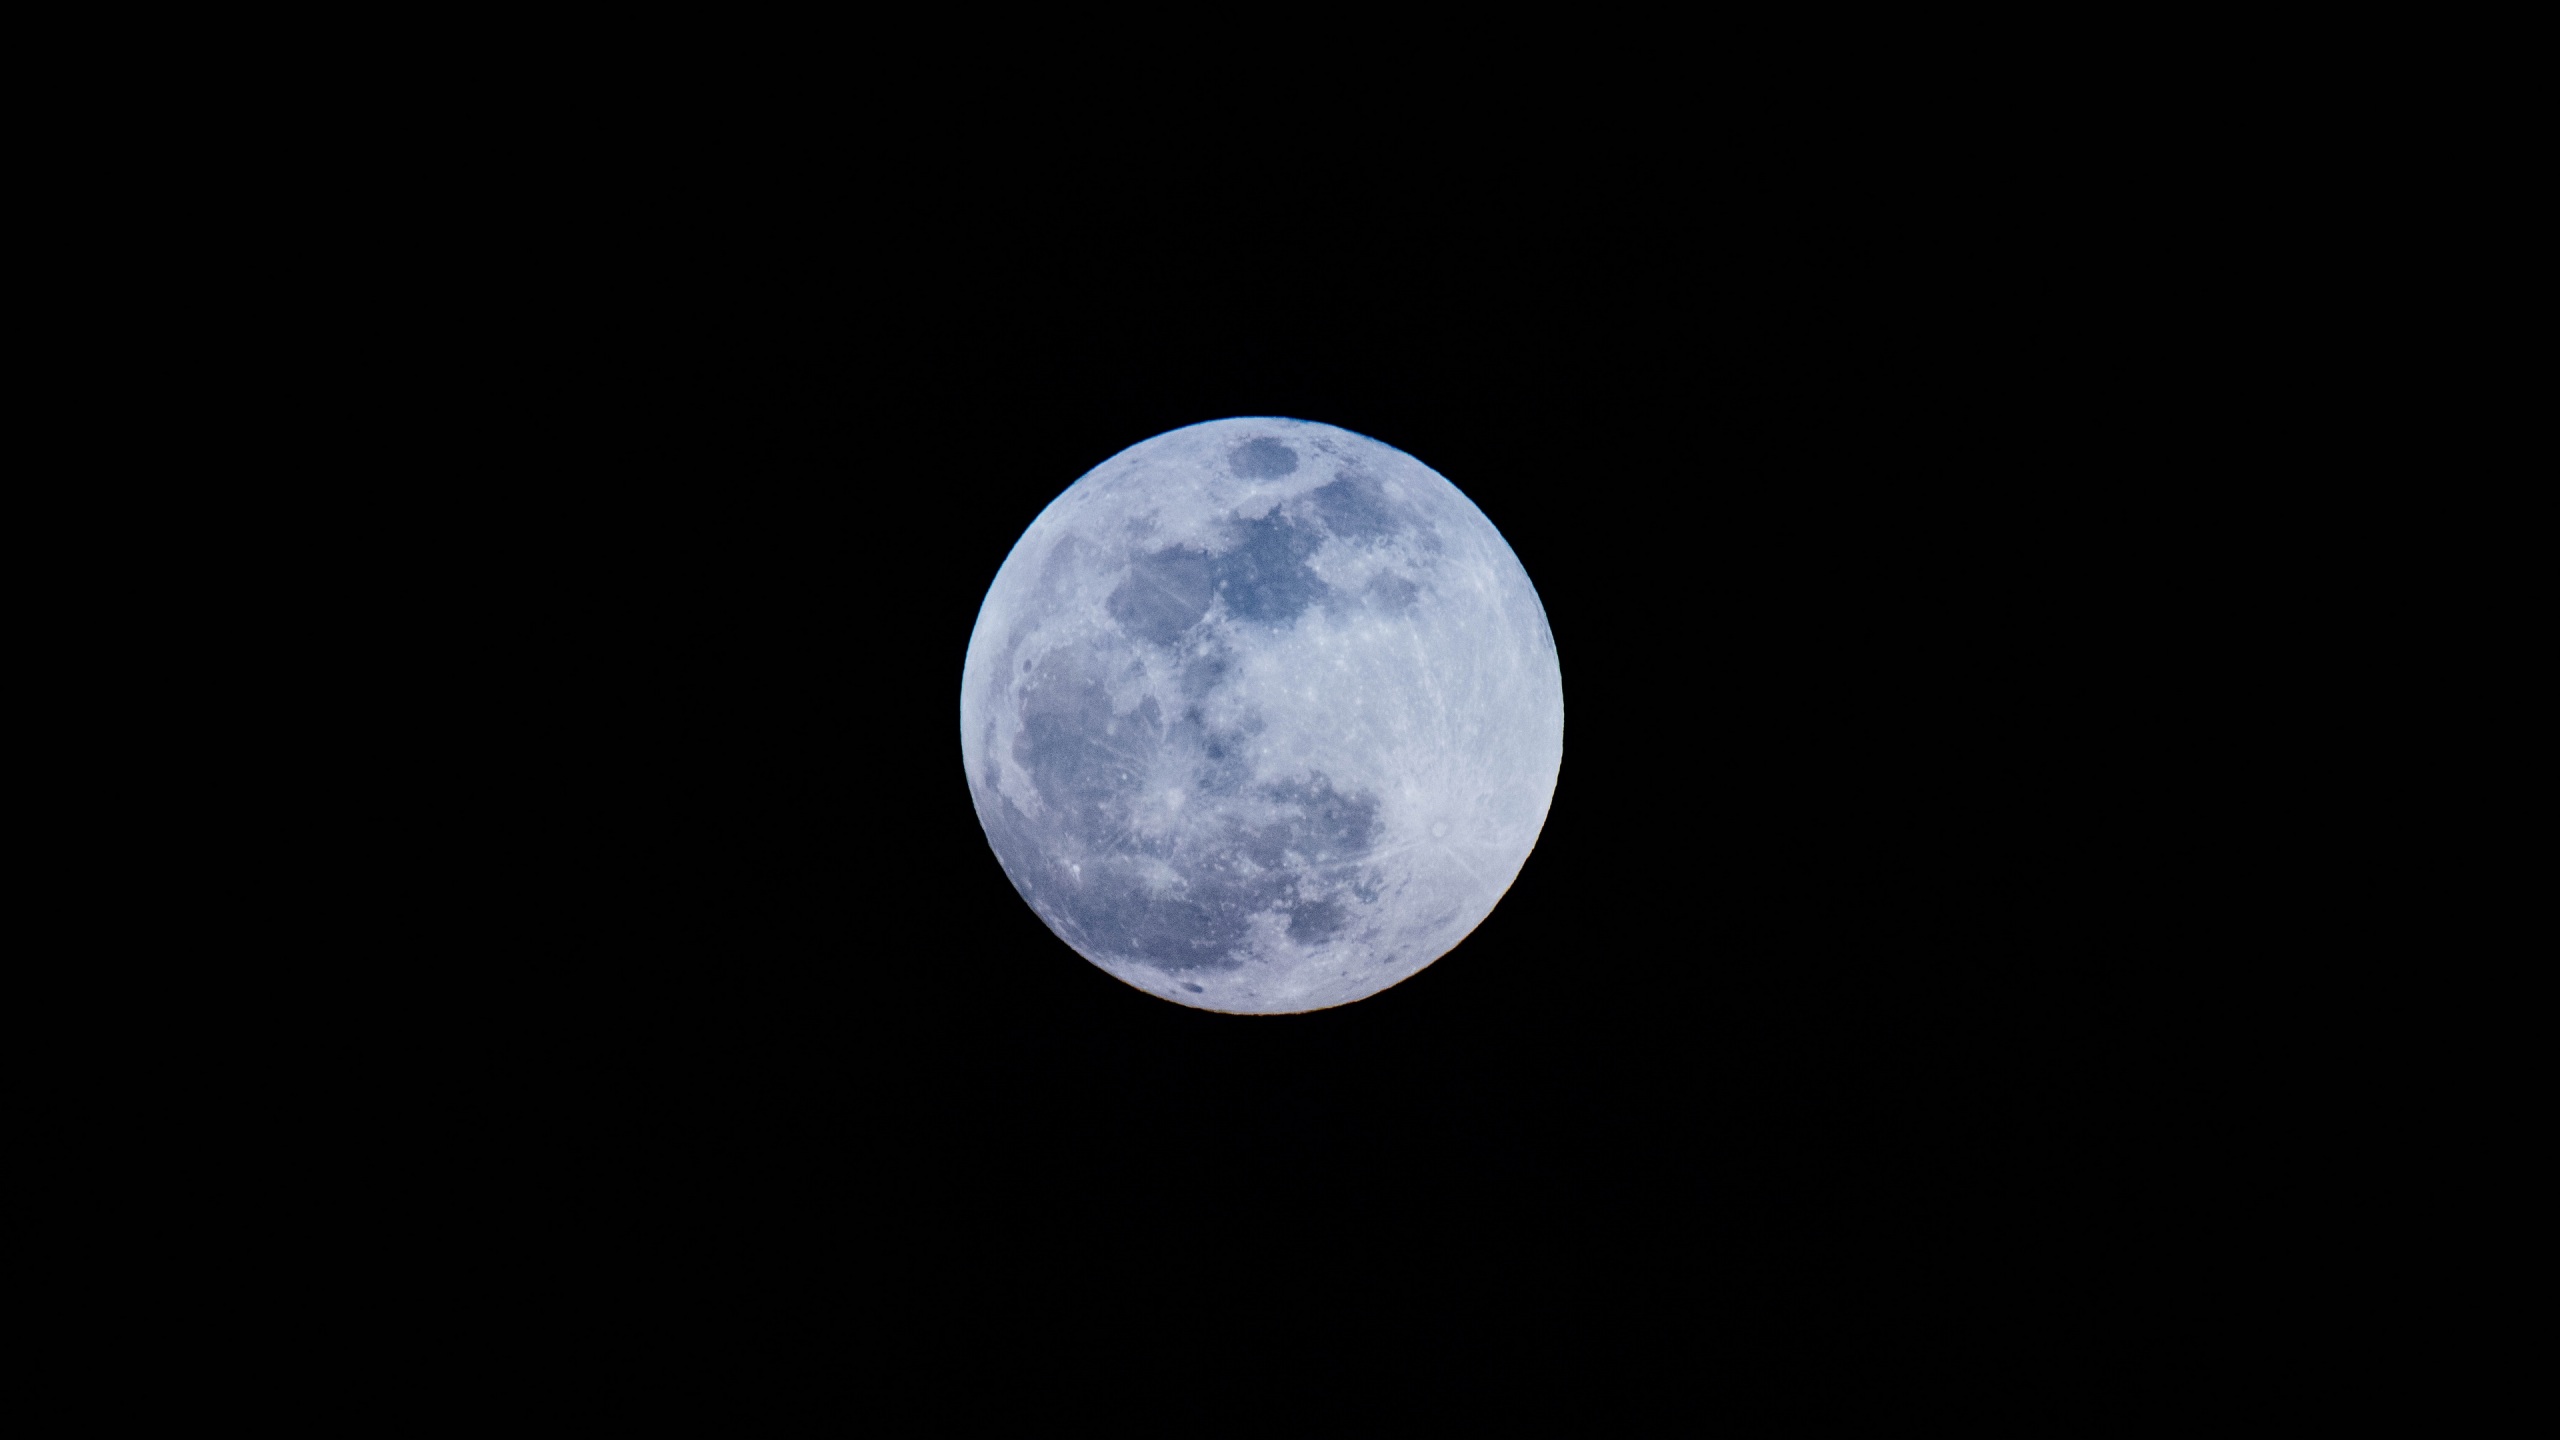 Chiêm ngưỡng Mặt trăng lộng lẫy và rực rỡ nhất với các bức hình nền 4K tuyệt đẹp. Lưu lại khoảnh khắc thật độc đáo trong thế giới vô tận của Mặt trăng, và thể hiện sự thu hút của bạn với những bức hình nền tuyệt đẹp này.